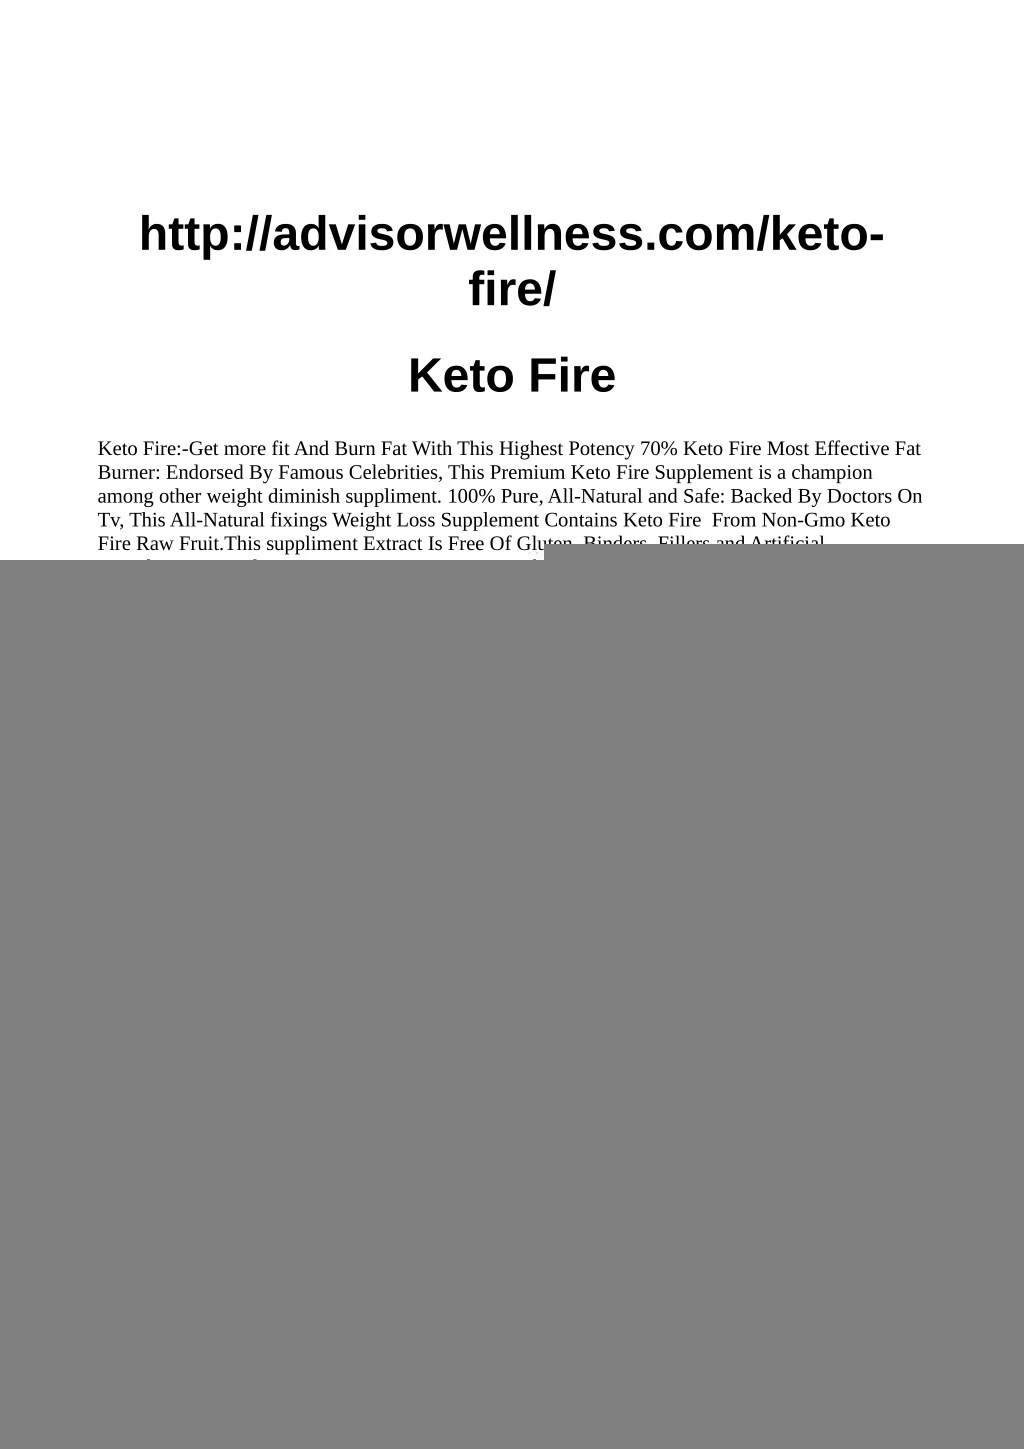 http advisorwellness com keto fire